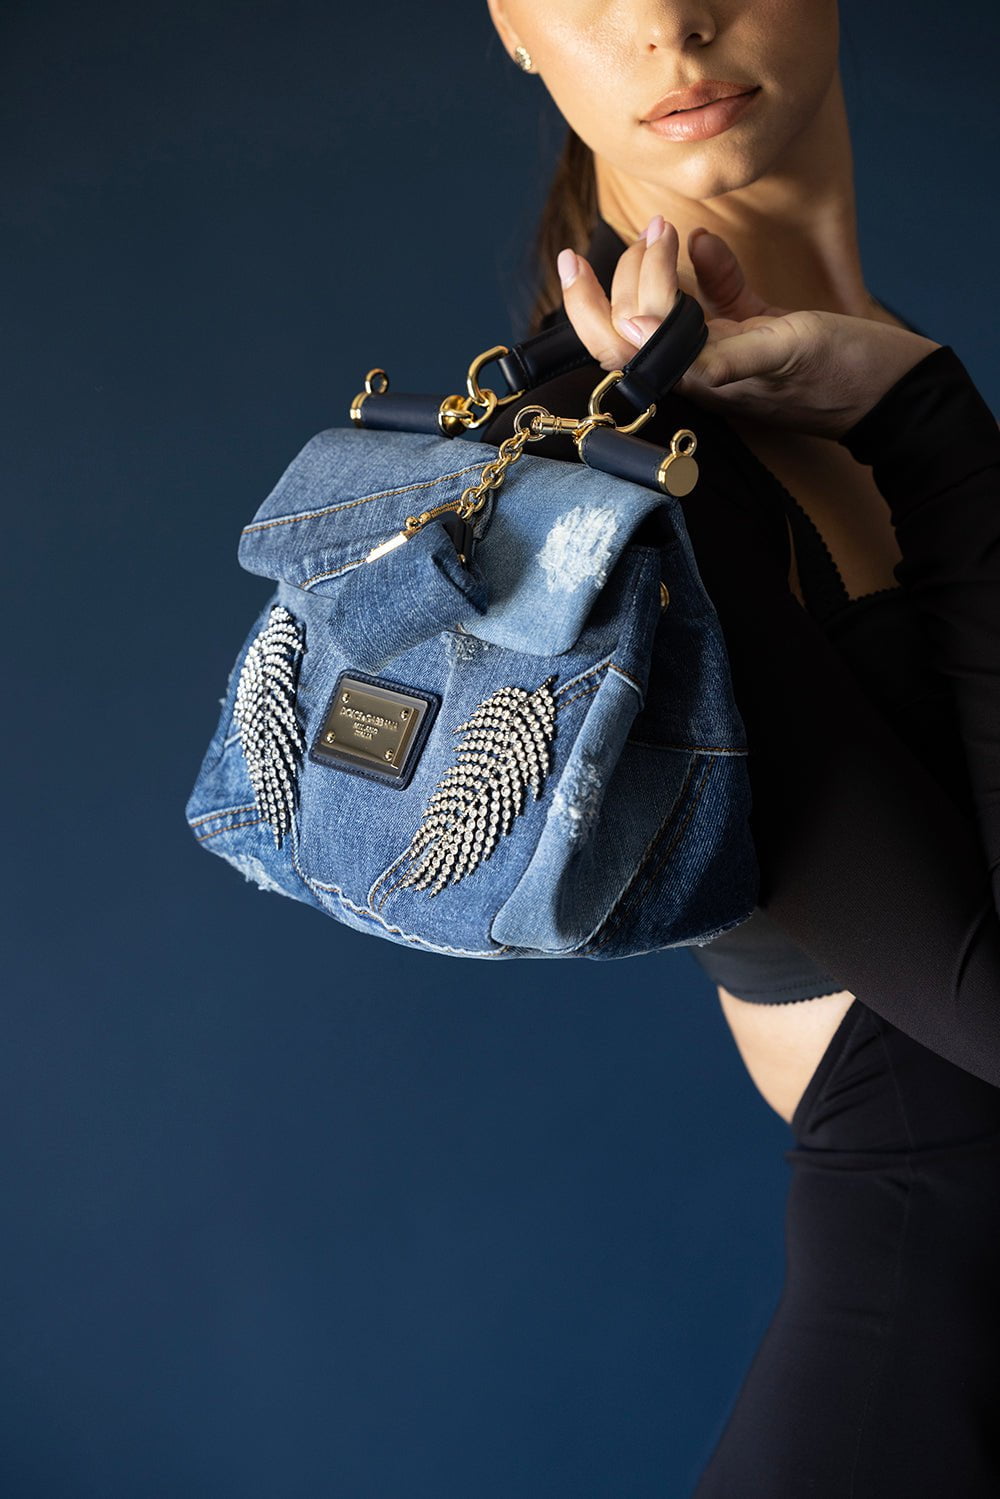 Dolce & Gabbana 'sicily Small' Shoulder Bag in Blue